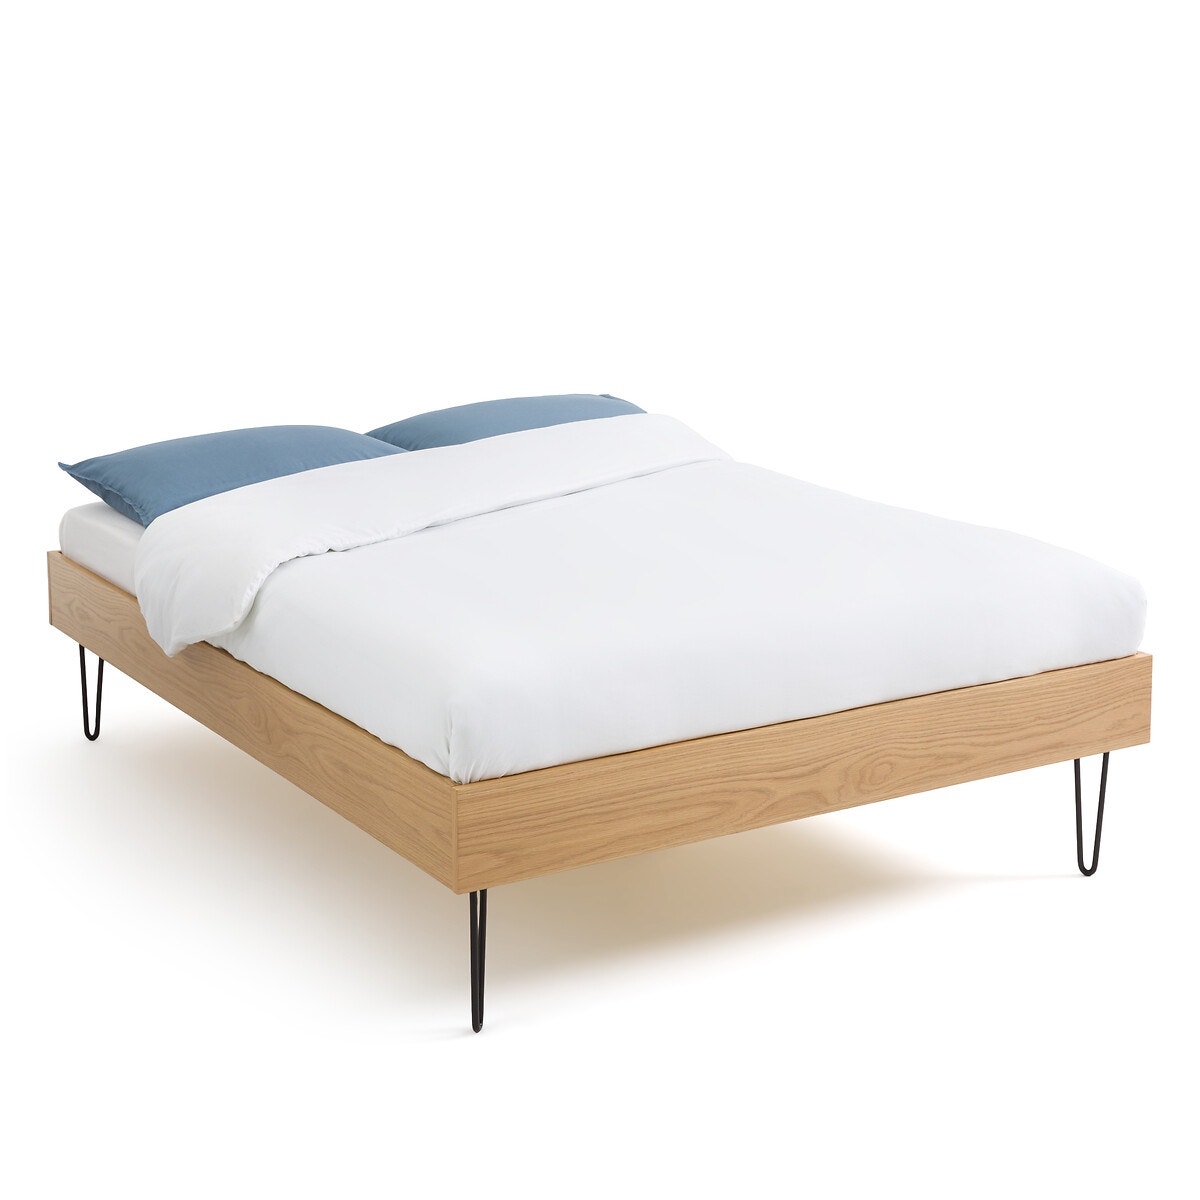 Κρεβάτι με τάβλες από καπλαμά ξύλου δρυ, Cleon